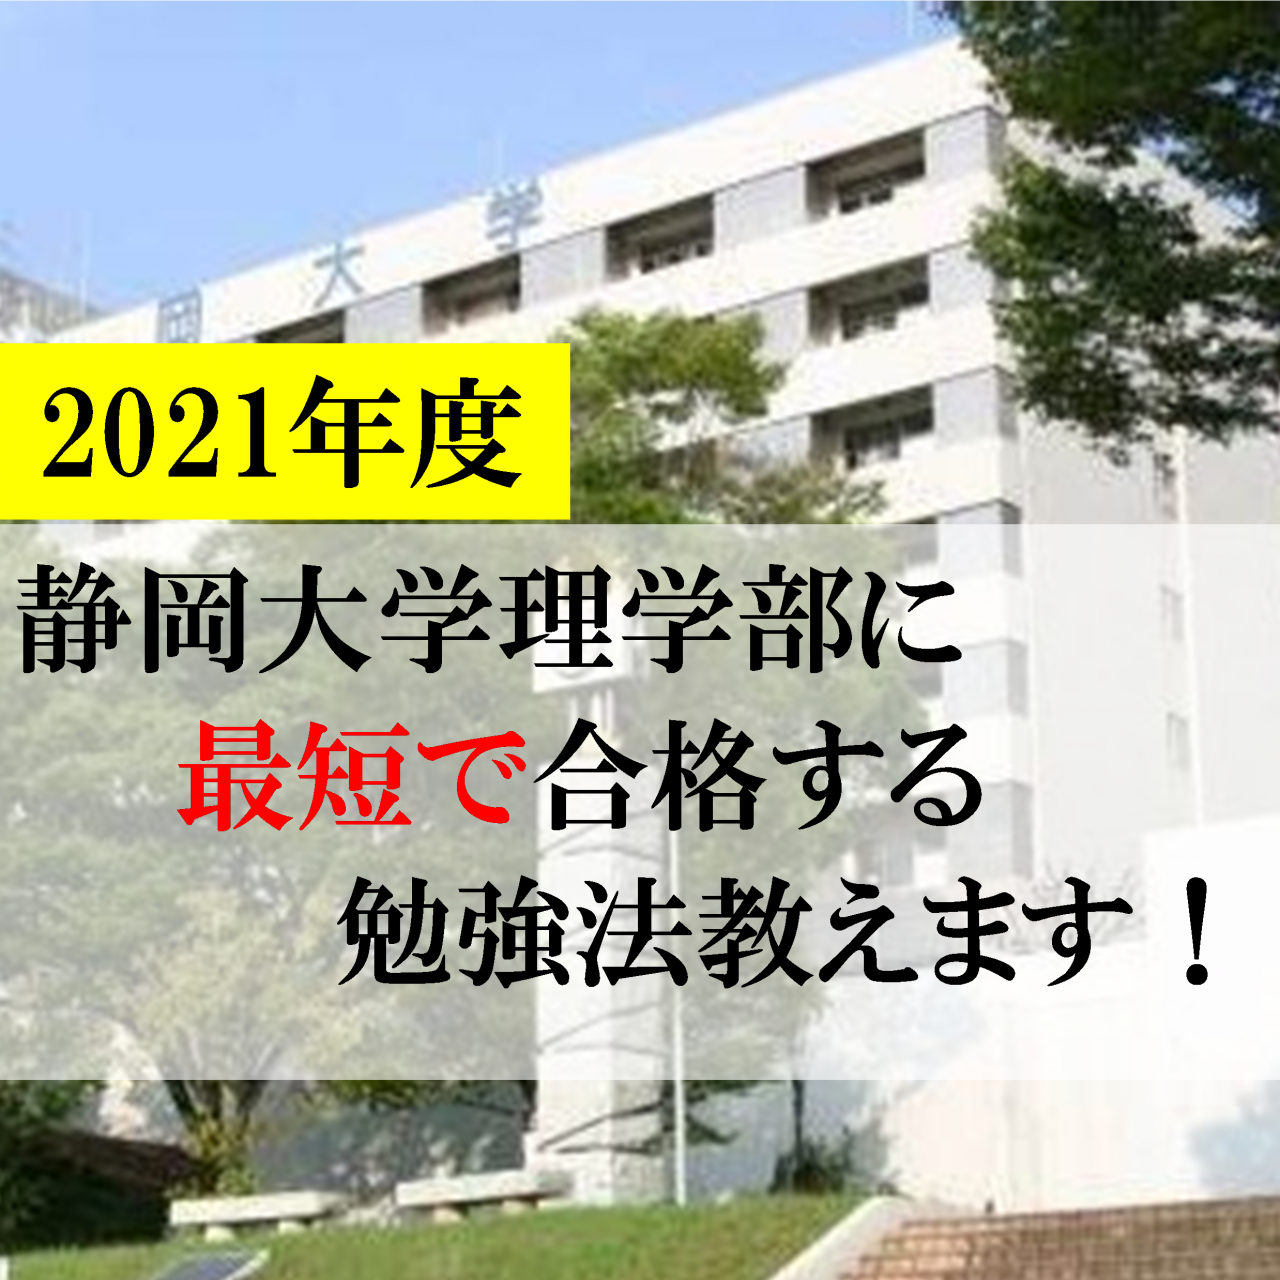 【岡崎の受験生必見】静岡大学理学部に最短で合格する勉強法教えます